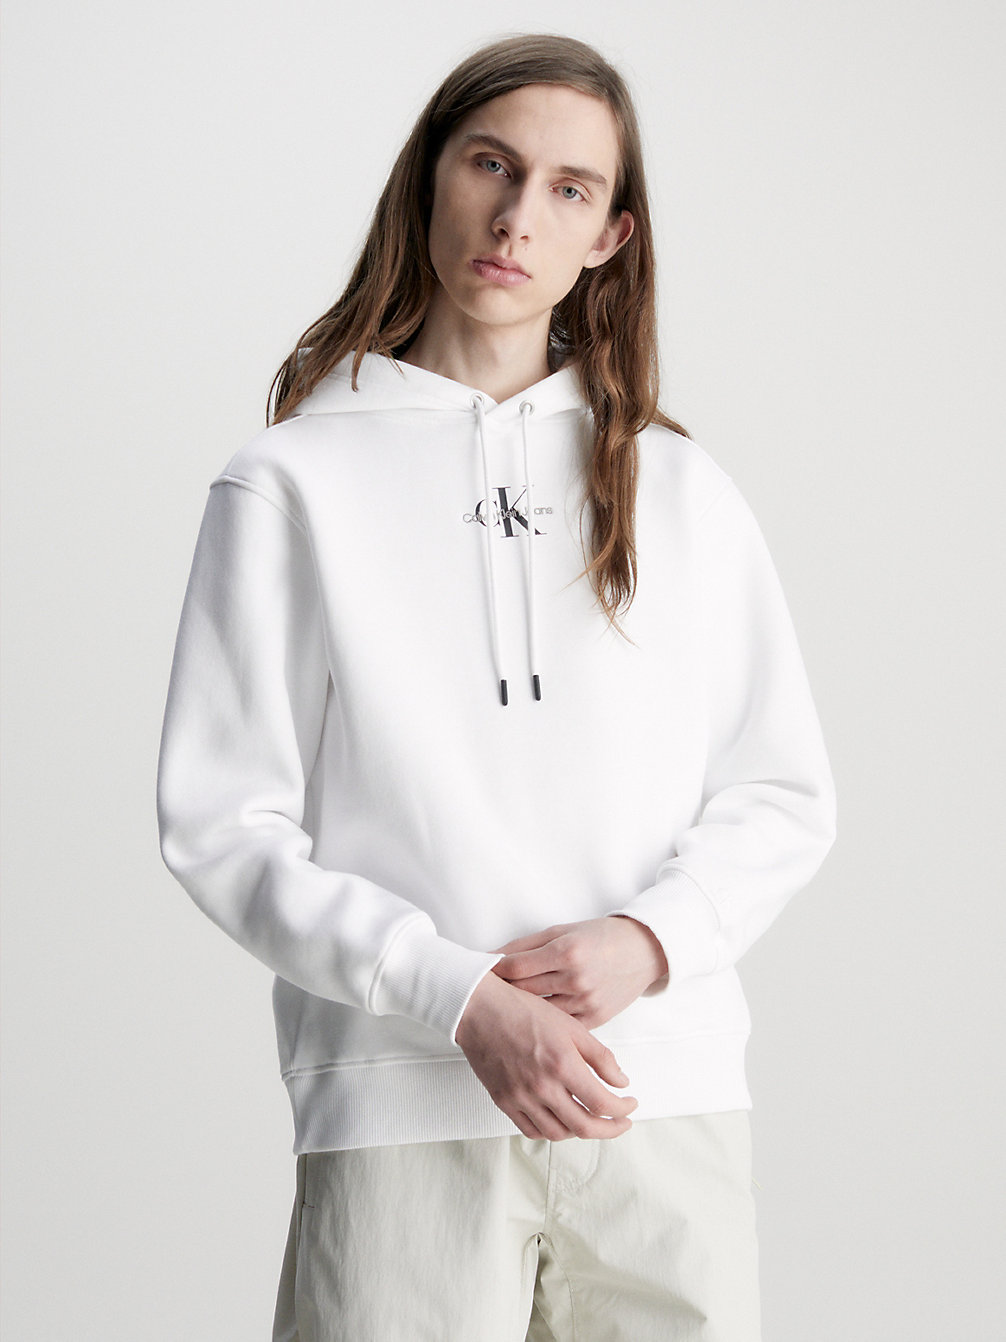 BRIGHT WHITE Monogram Hoodie undefined men Calvin Klein